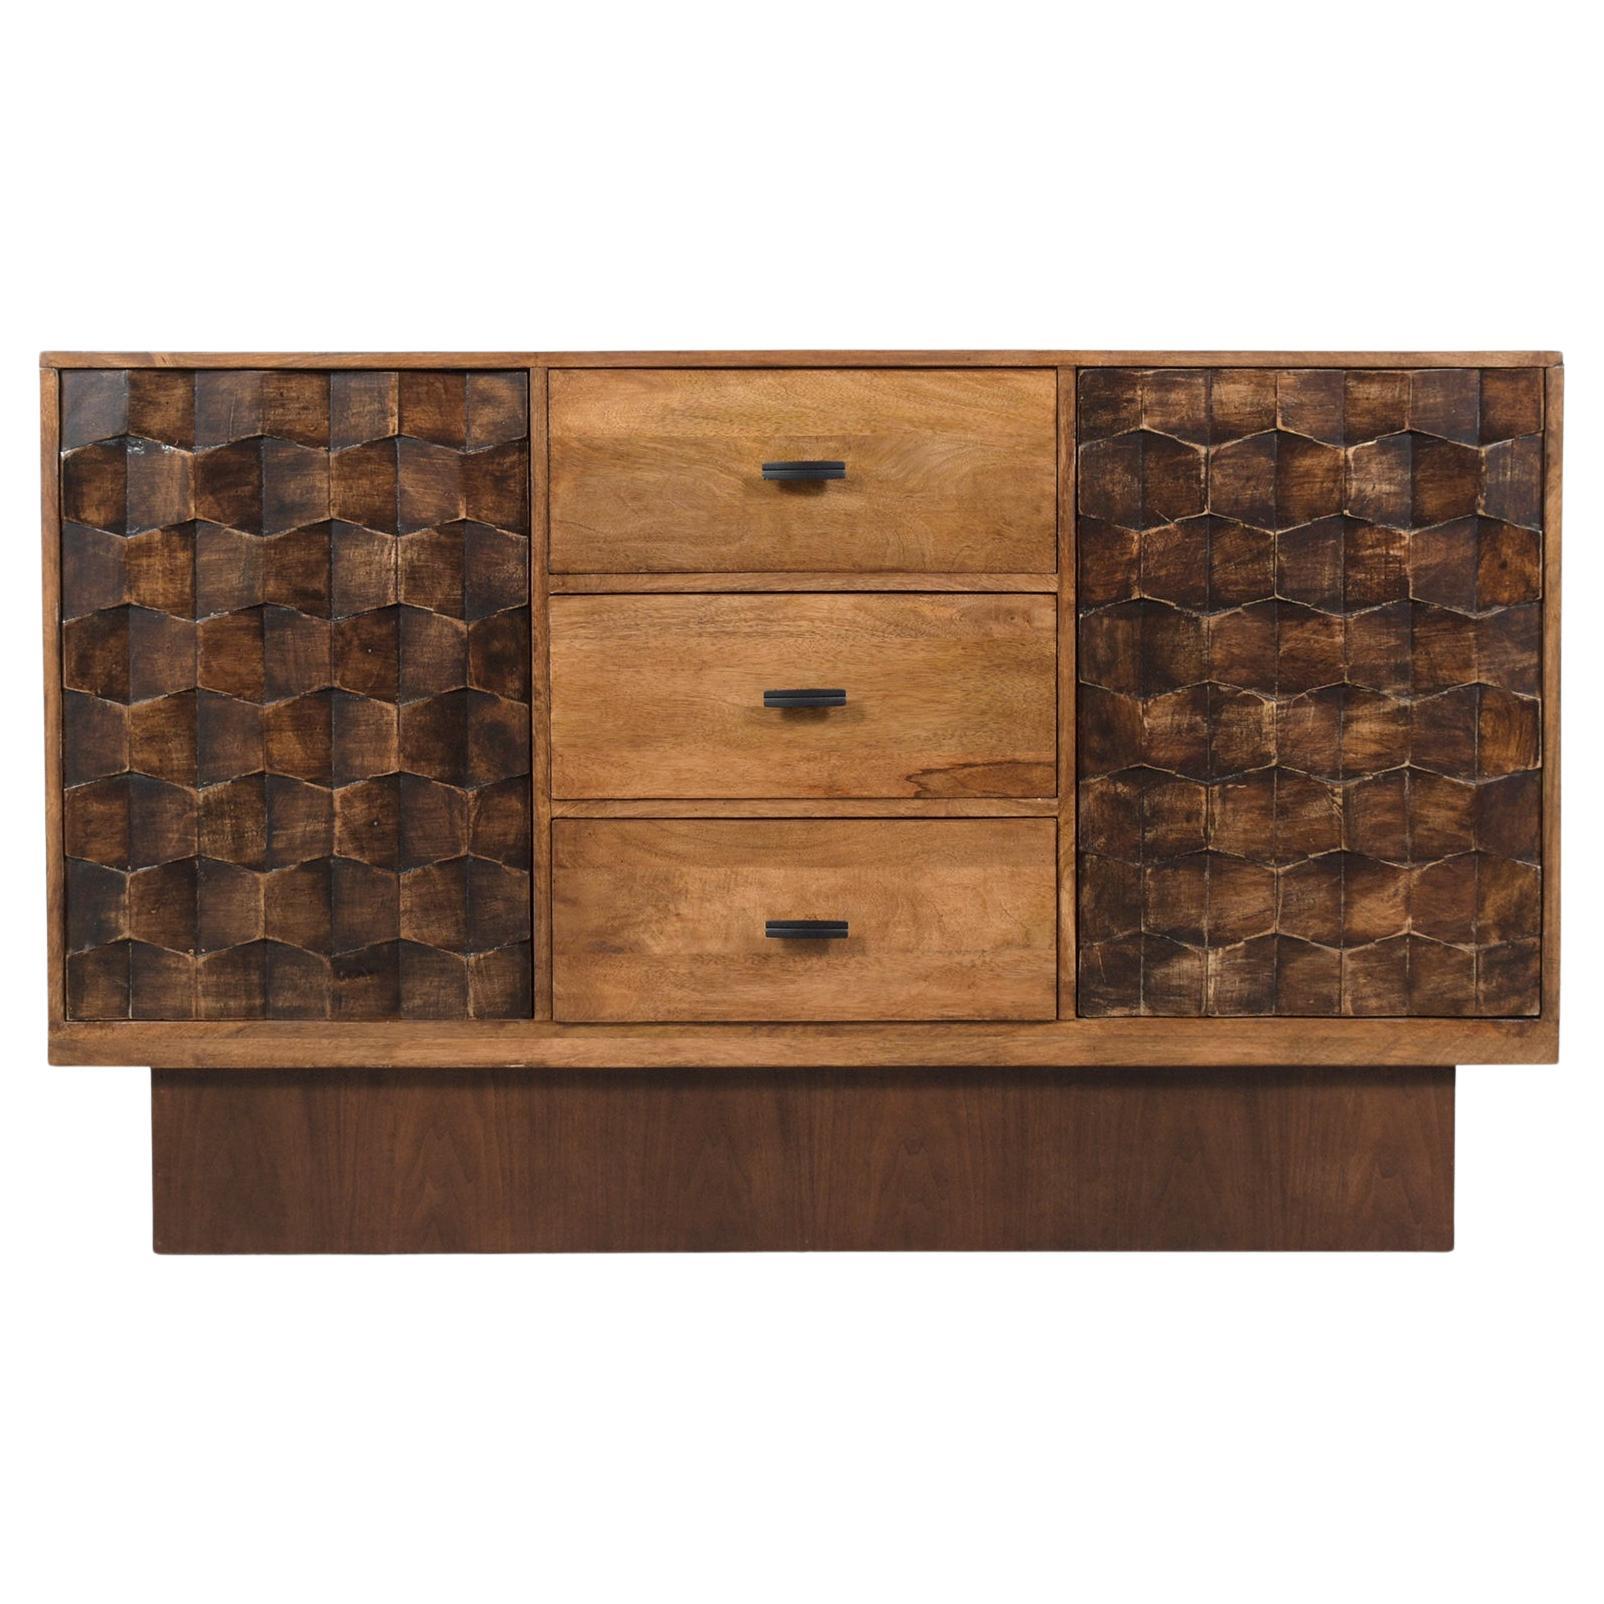 Solid Teak Wood Credenza: An Epitome of Craftsmanship & Elegance For Sale